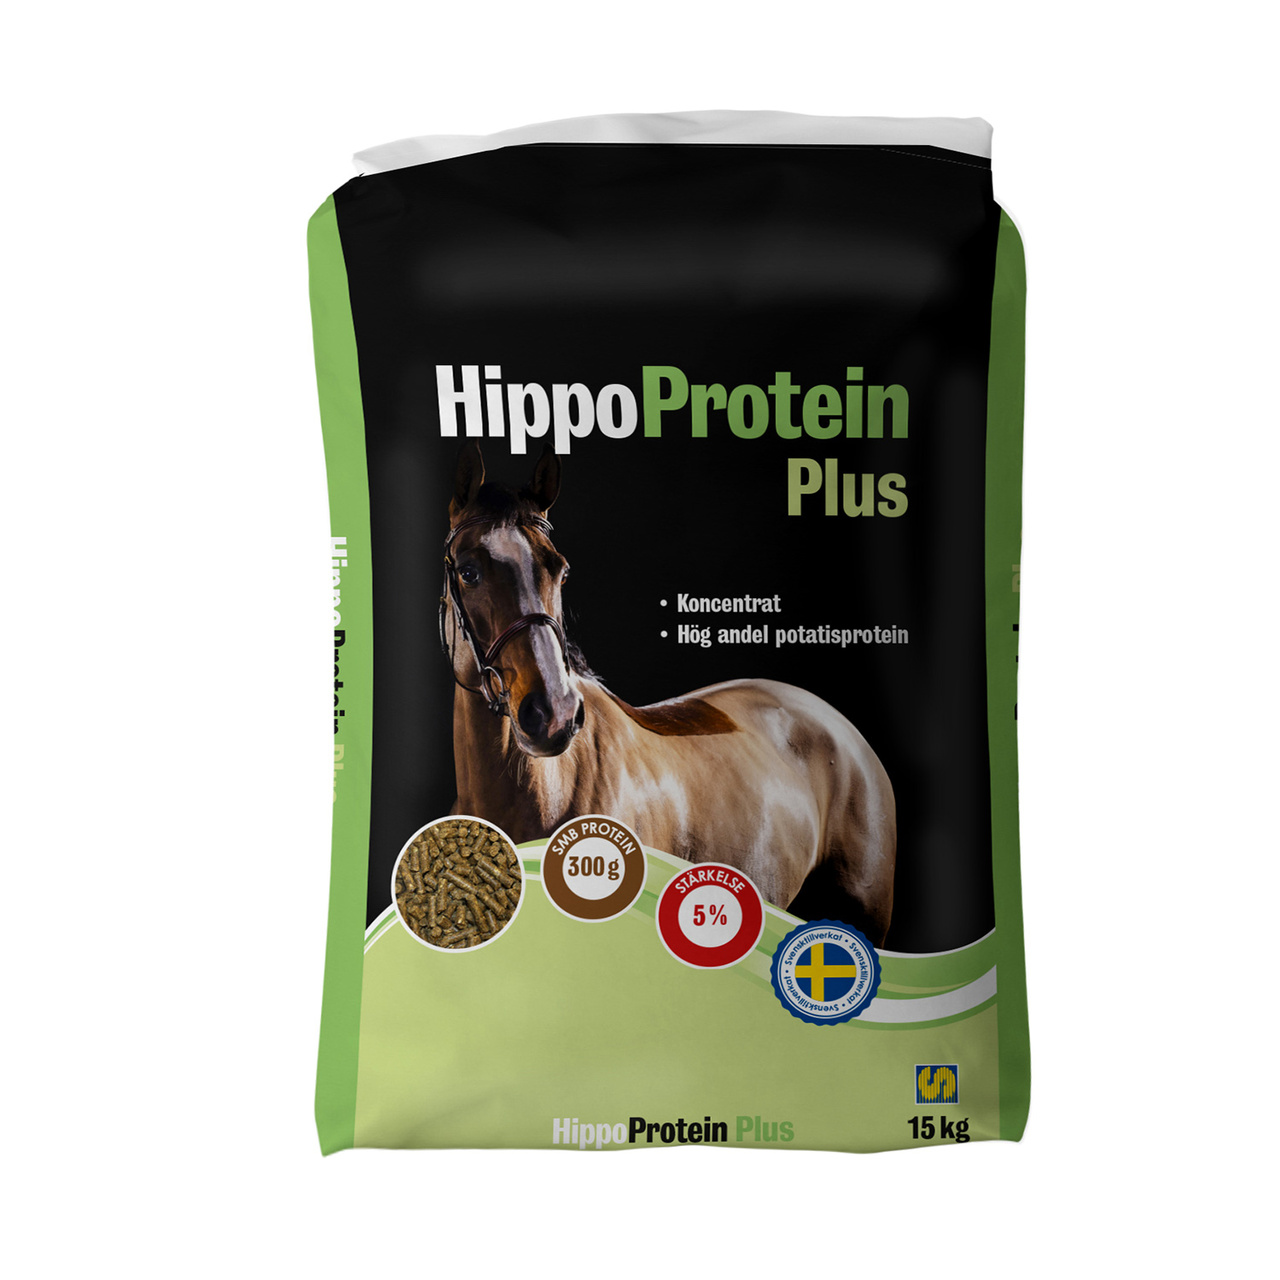 Hippo protein plus 15 kg